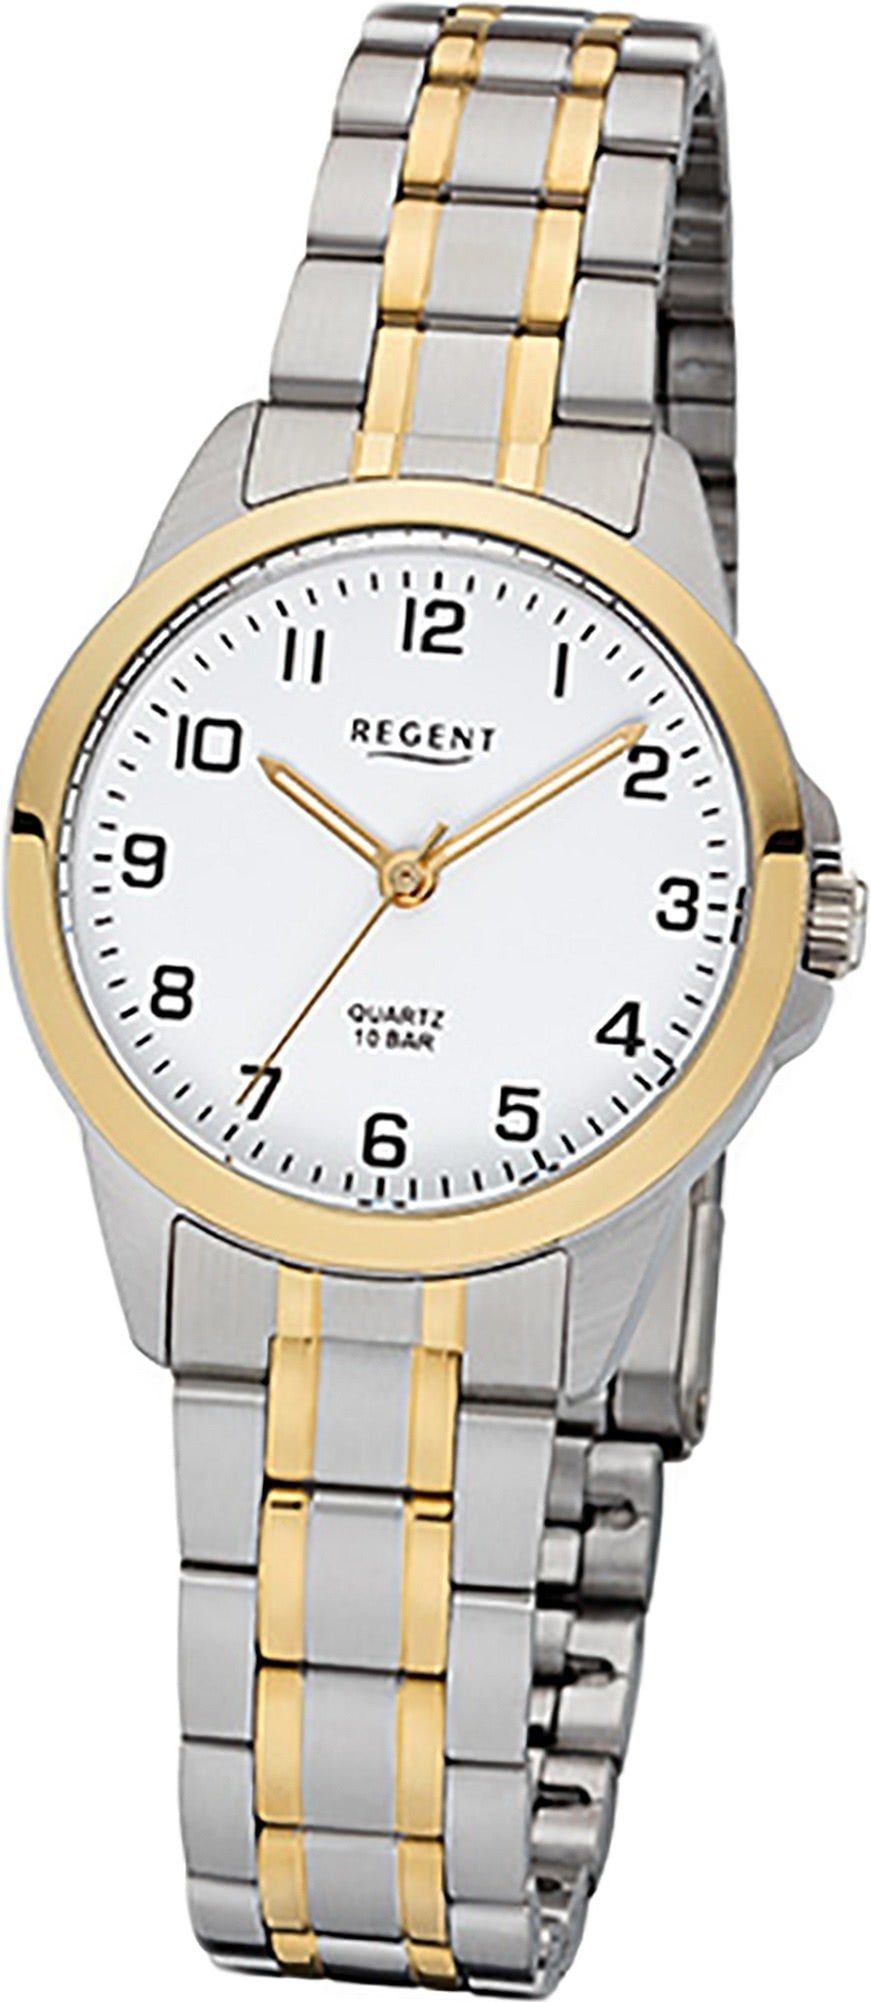 Quarz, Edelstahl silber, rundes F-1006 Damen Uhr Damenuhr Edelstahlarmband gold, Gehäuse, Regent klein Quarzuhr Regent (29mm)